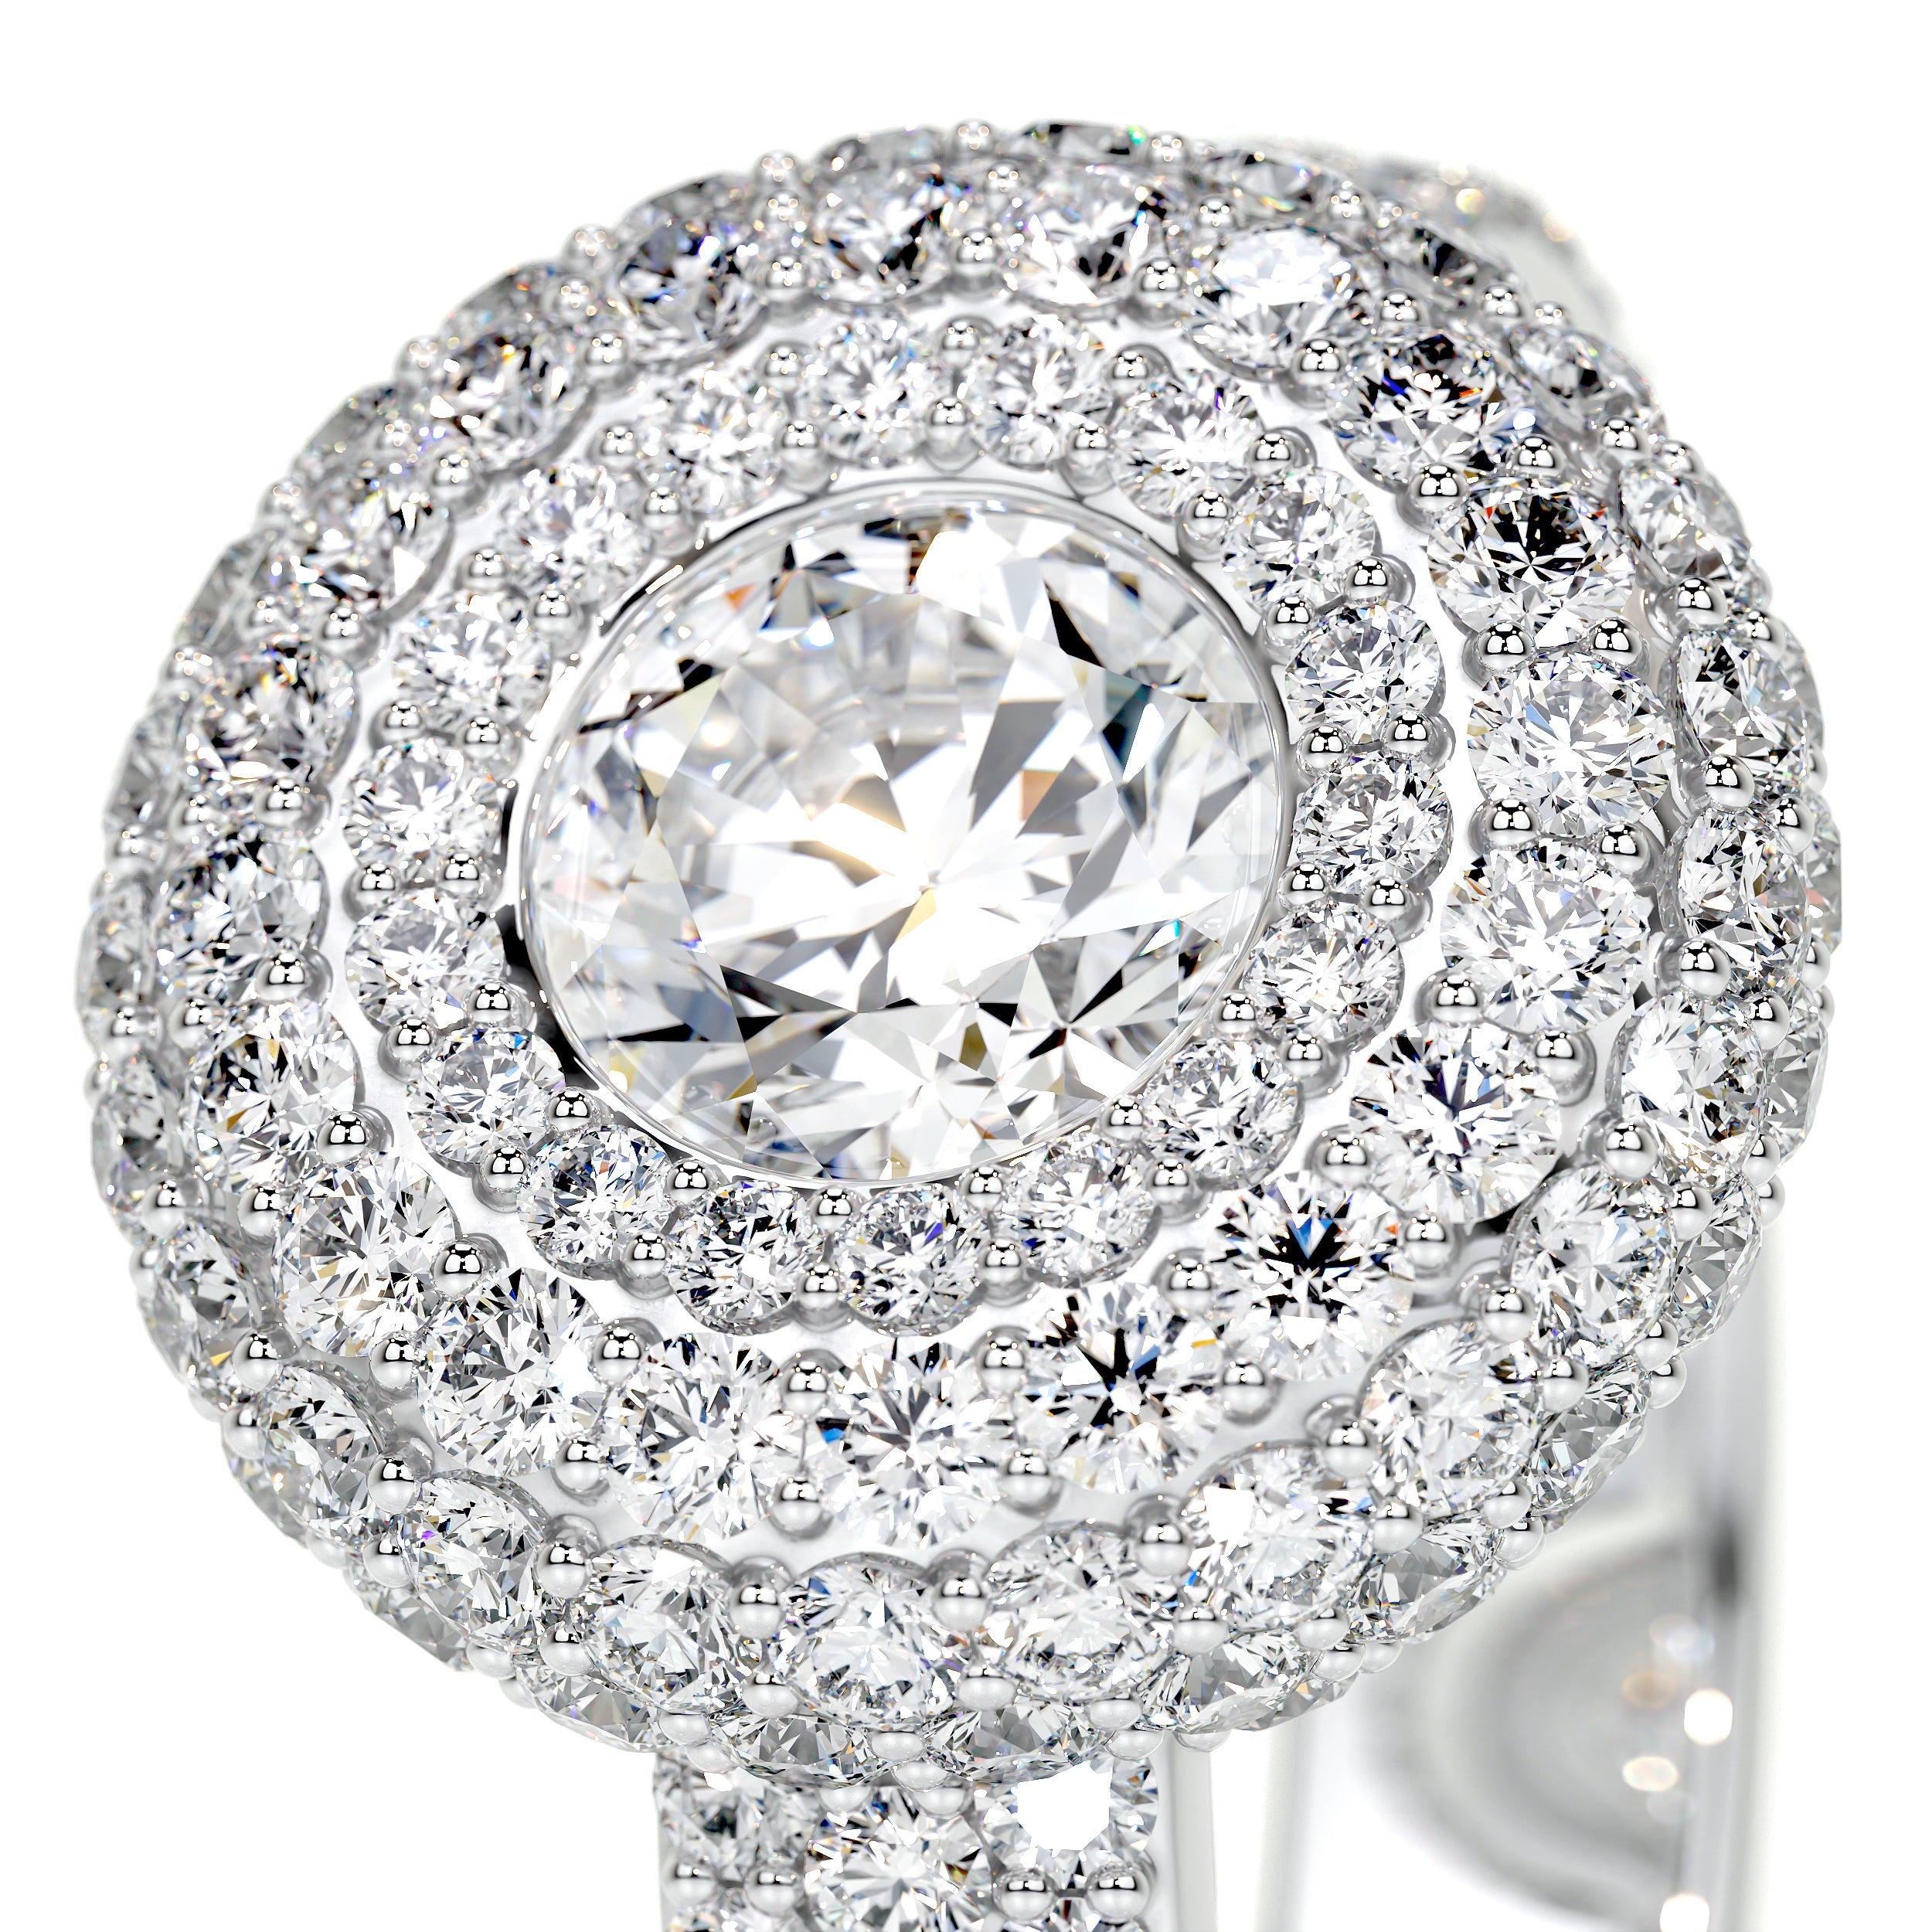 Reagan Lab Grown Diamond Ring   (2.25 Carat) -Platinum